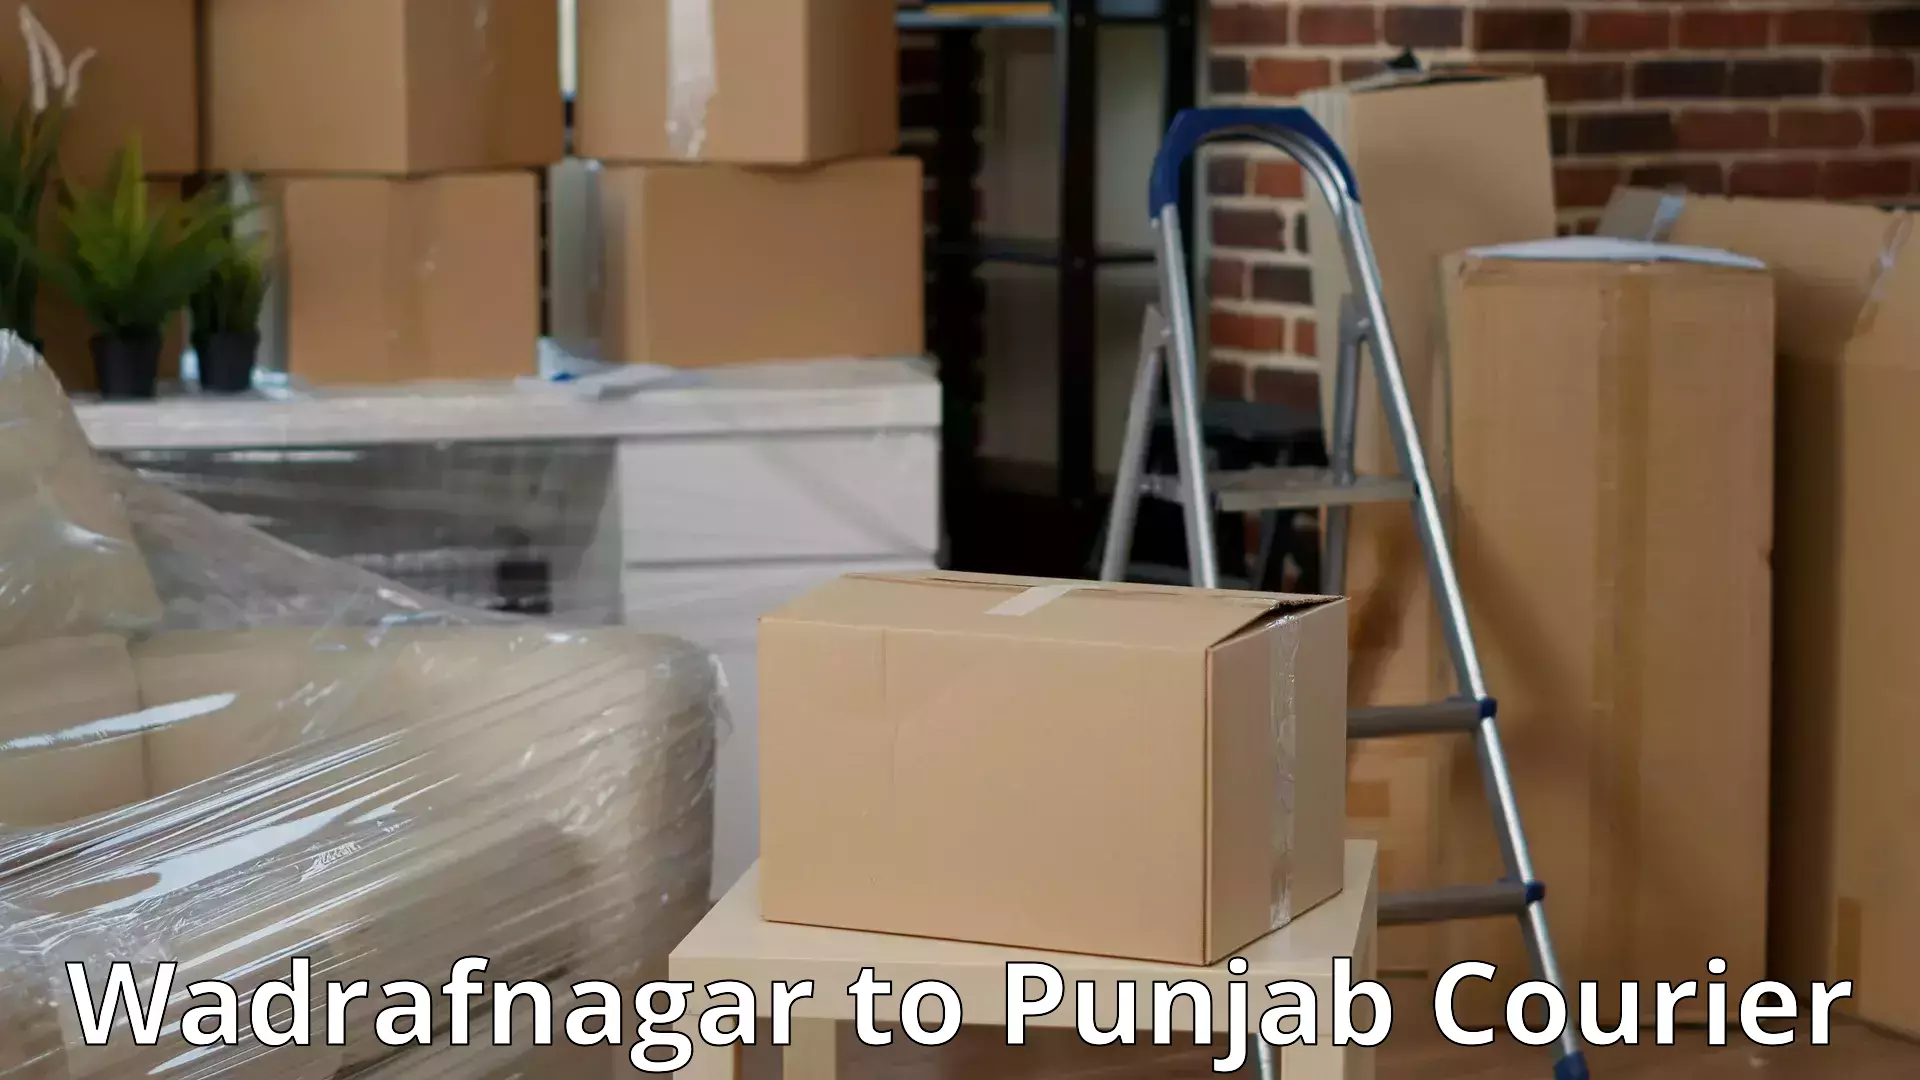 Efficient moving strategies Wadrafnagar to Dinanagar